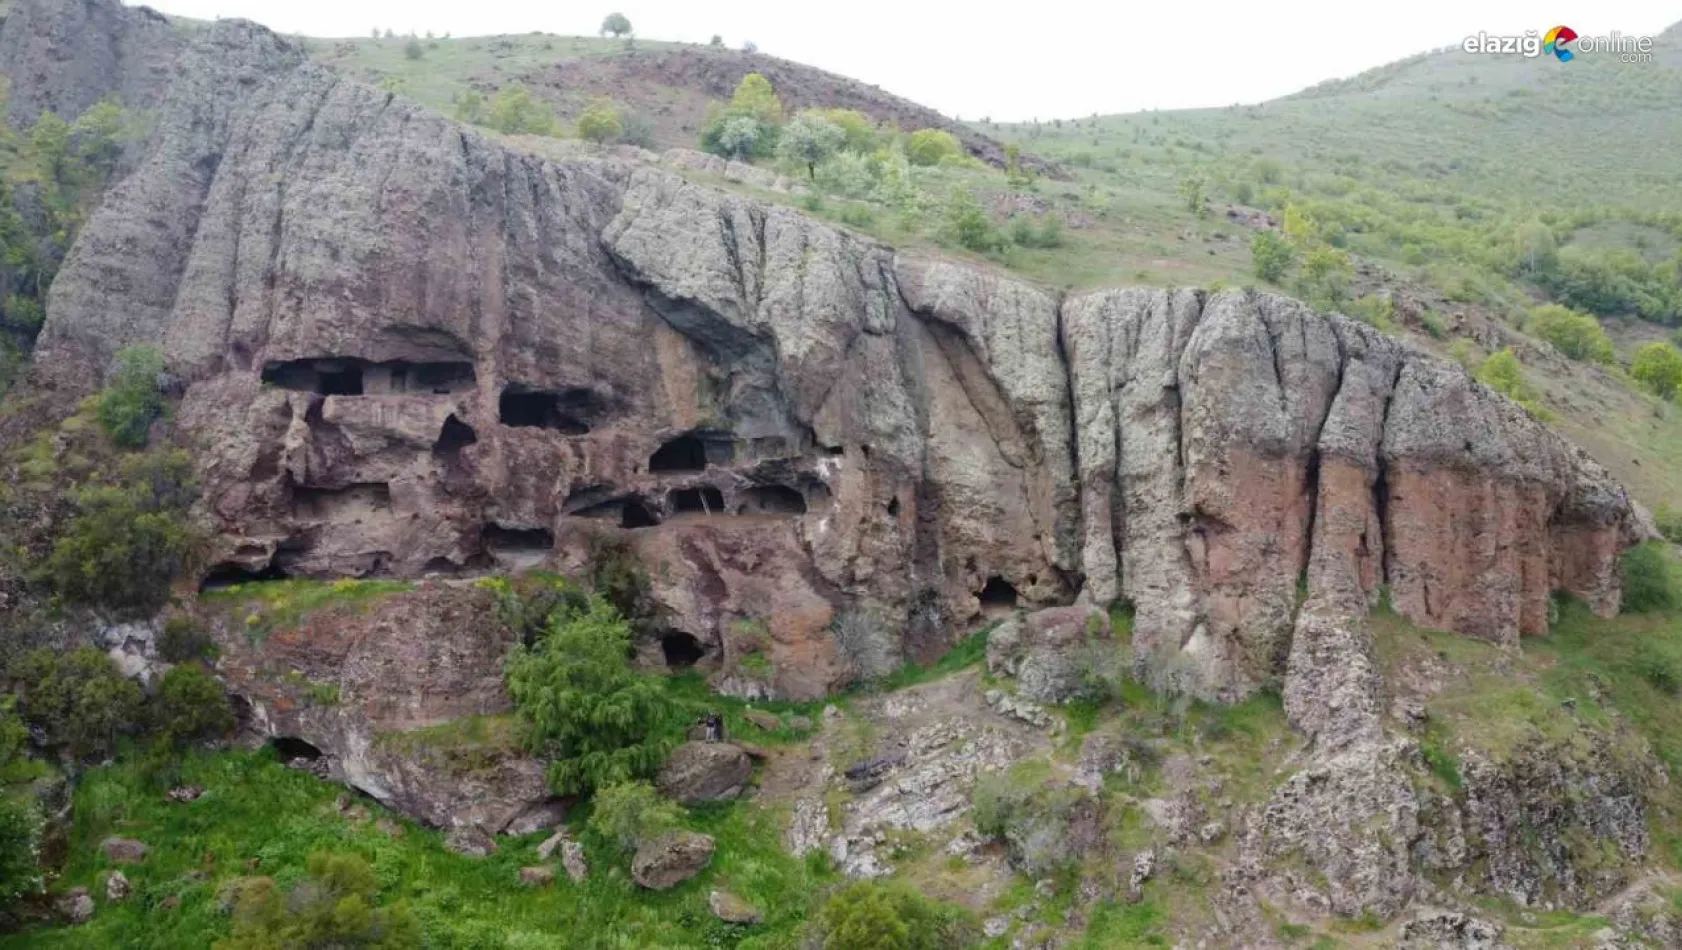 5 katlı Zağ mağaraları turizme kazandırılmayı bekliyor!